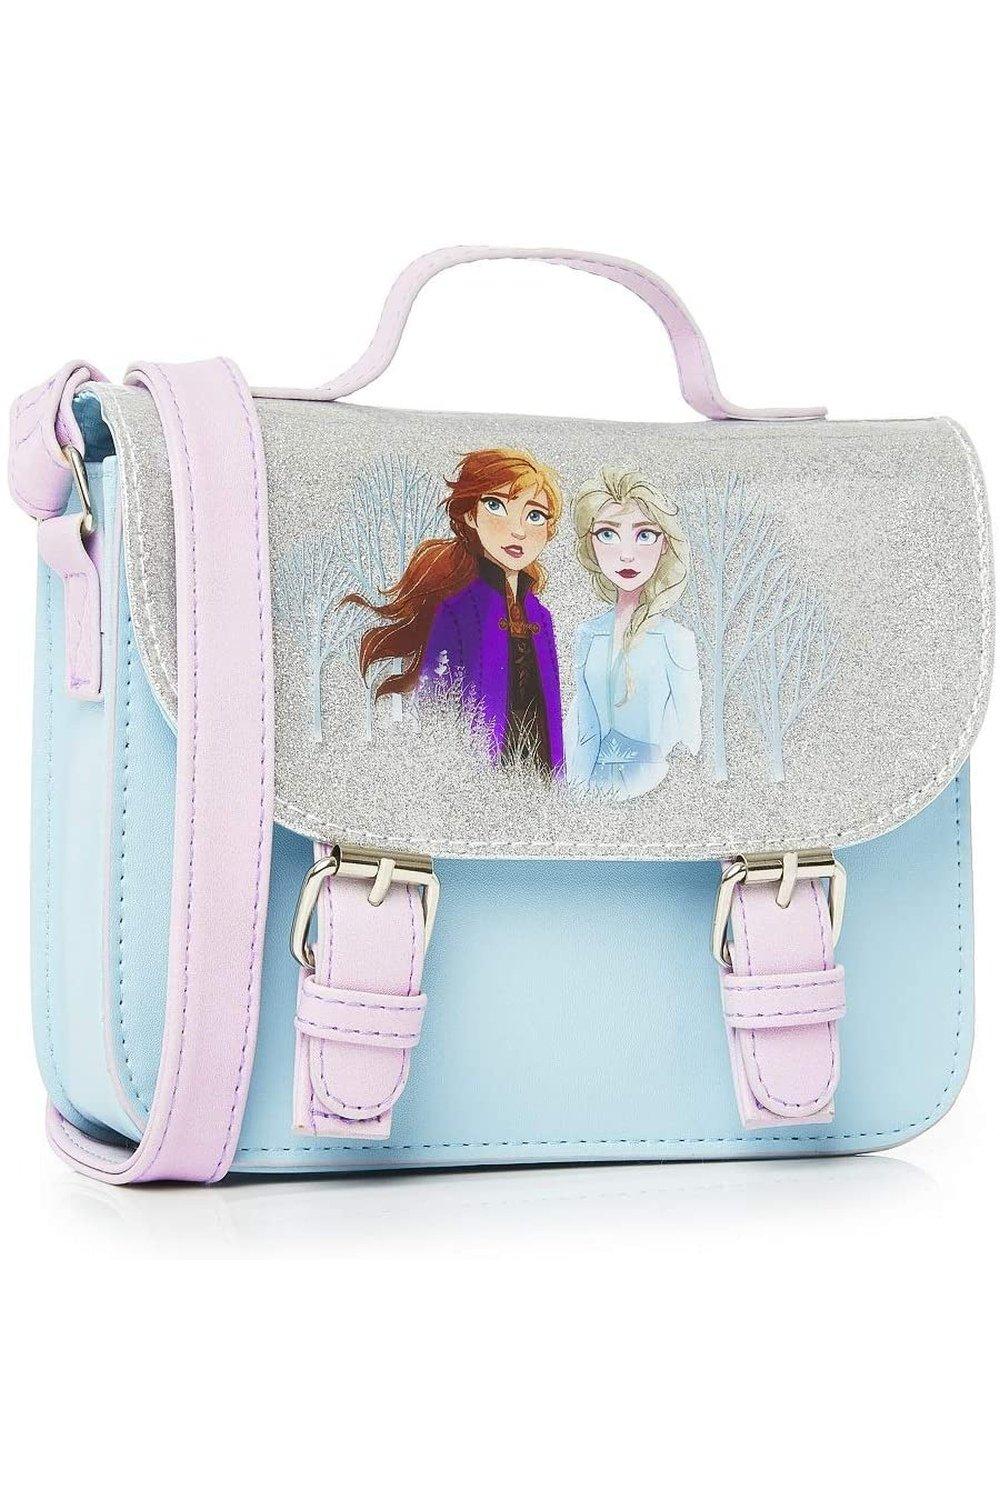 Сумка-ранец Disney Frozen, мультиколор детские сумки через плечо disney модная миниатюрная сумка через плечо с мультяшным рисунком холодное сердце 2 для принцессы эльзы анны соф